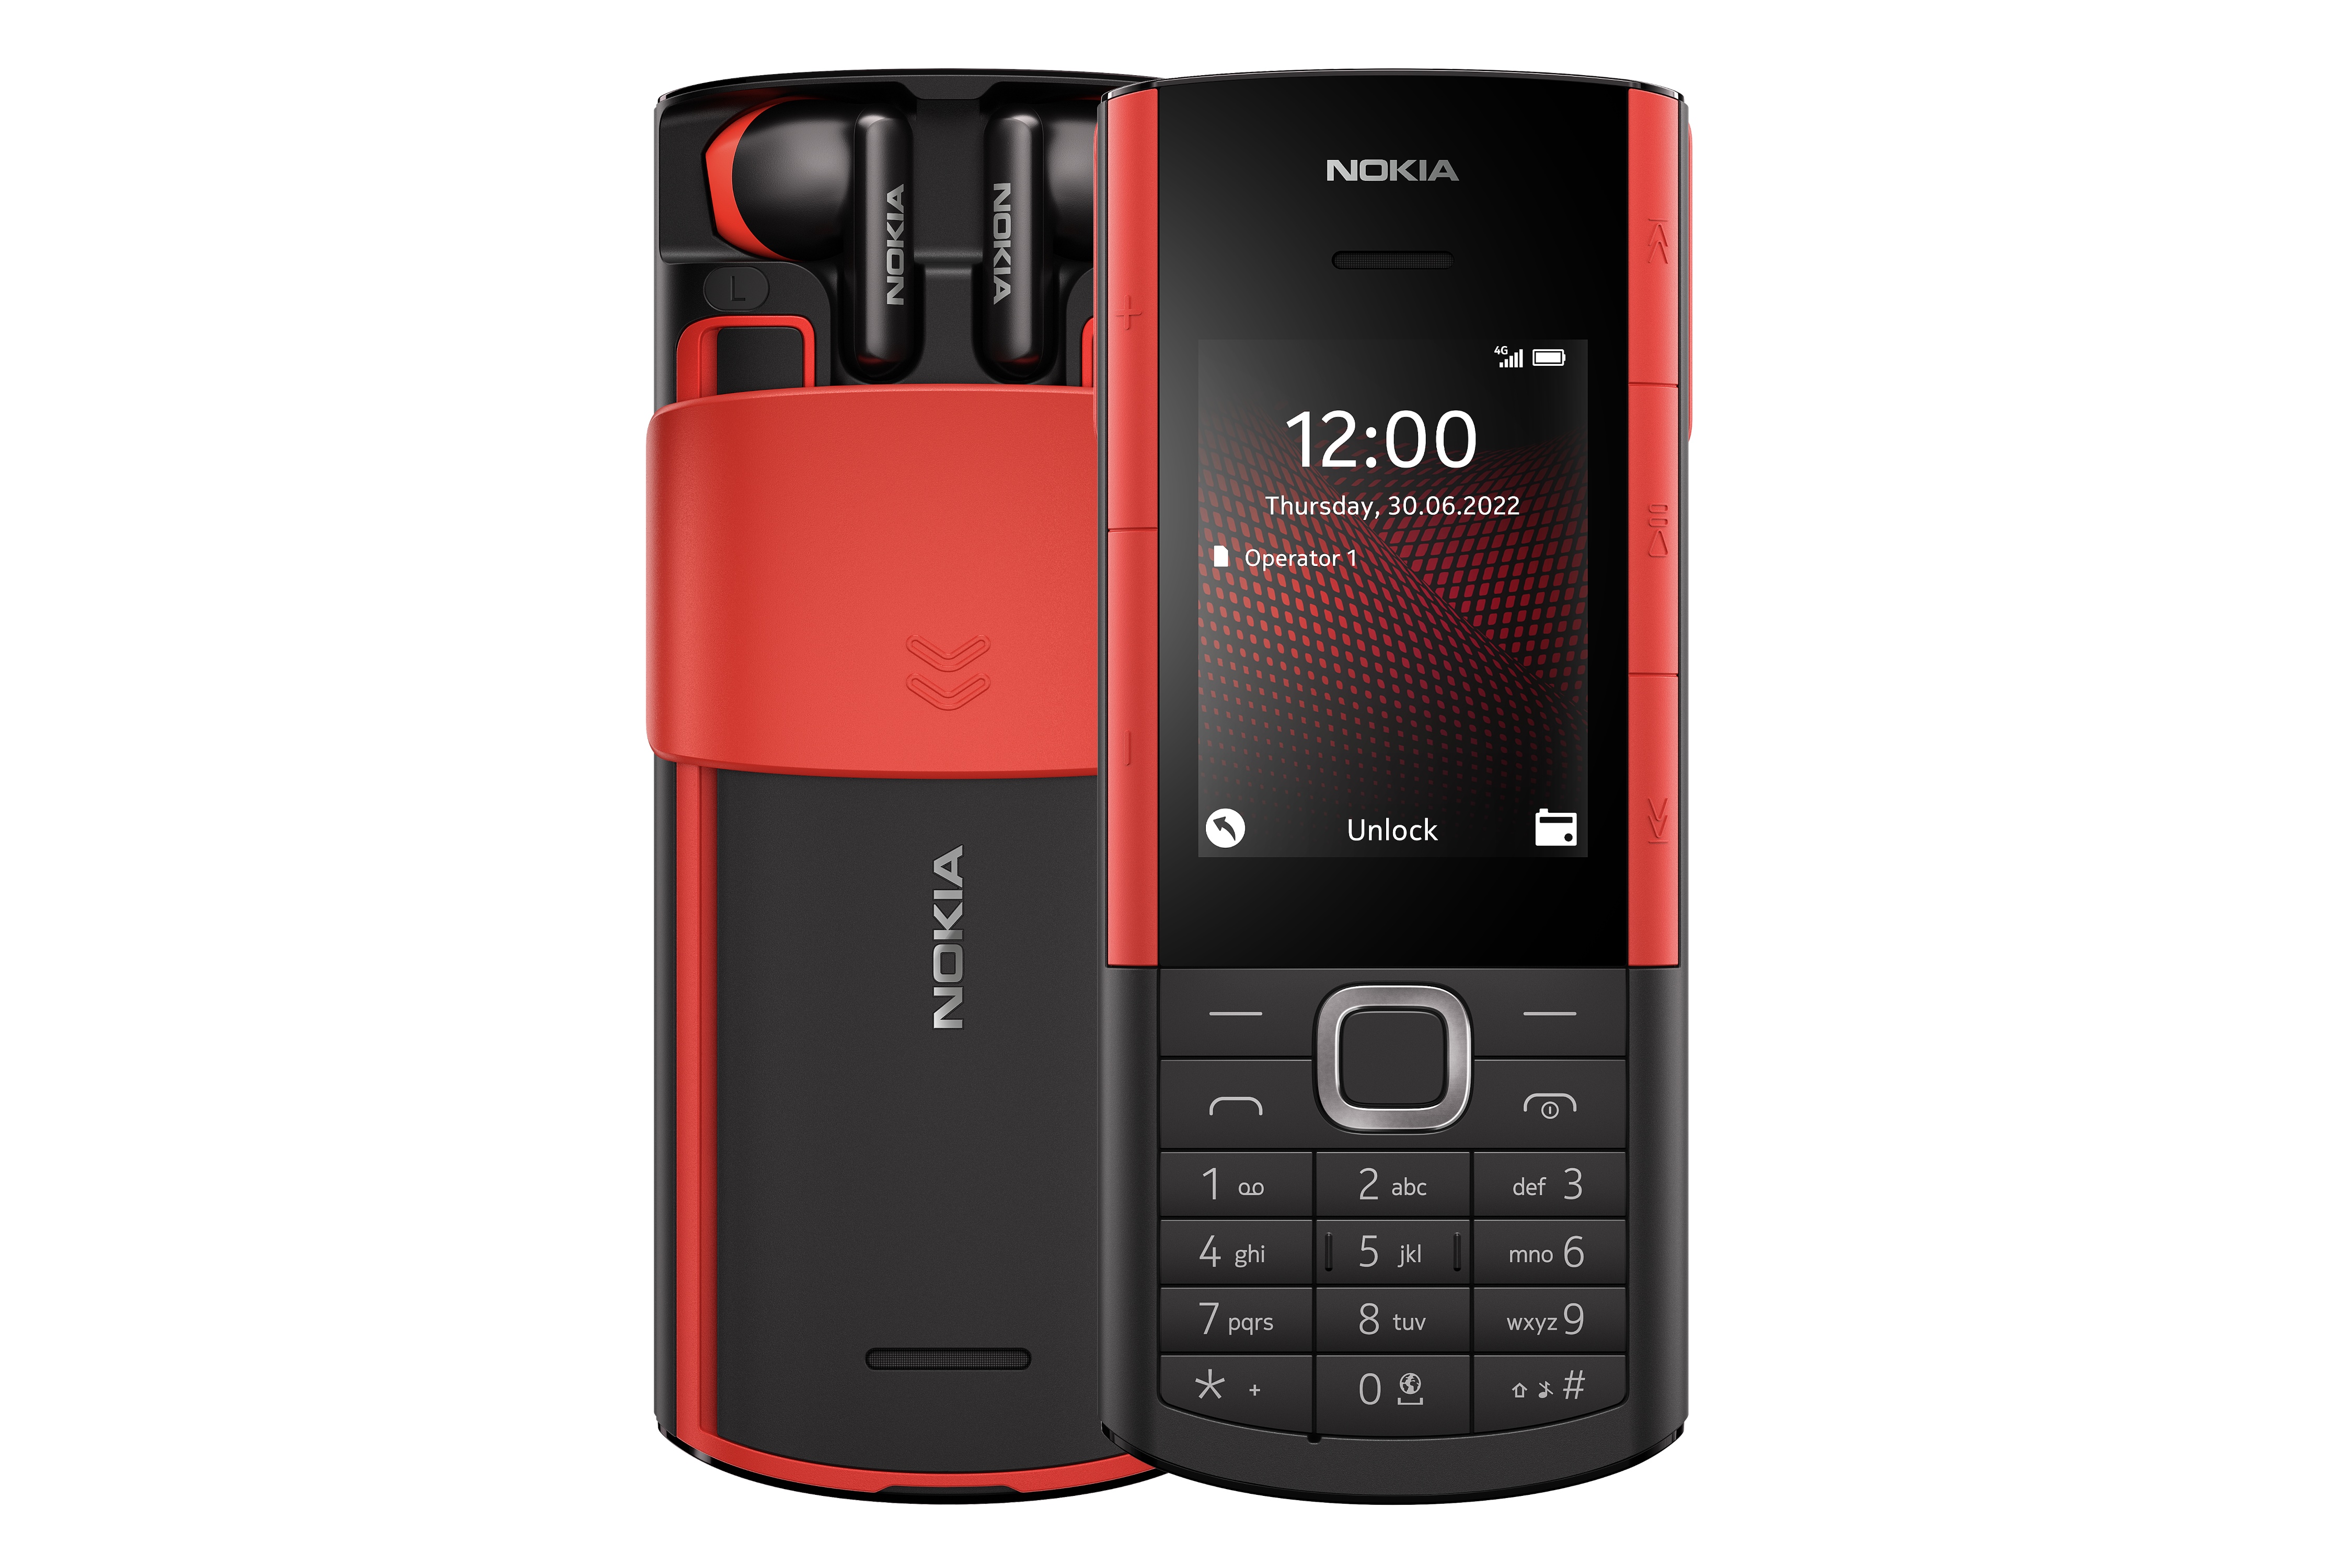 قیمت گوشی نوکیا 5710 XpressAudio | Nokia 5710 XpressAudio + مشخصات